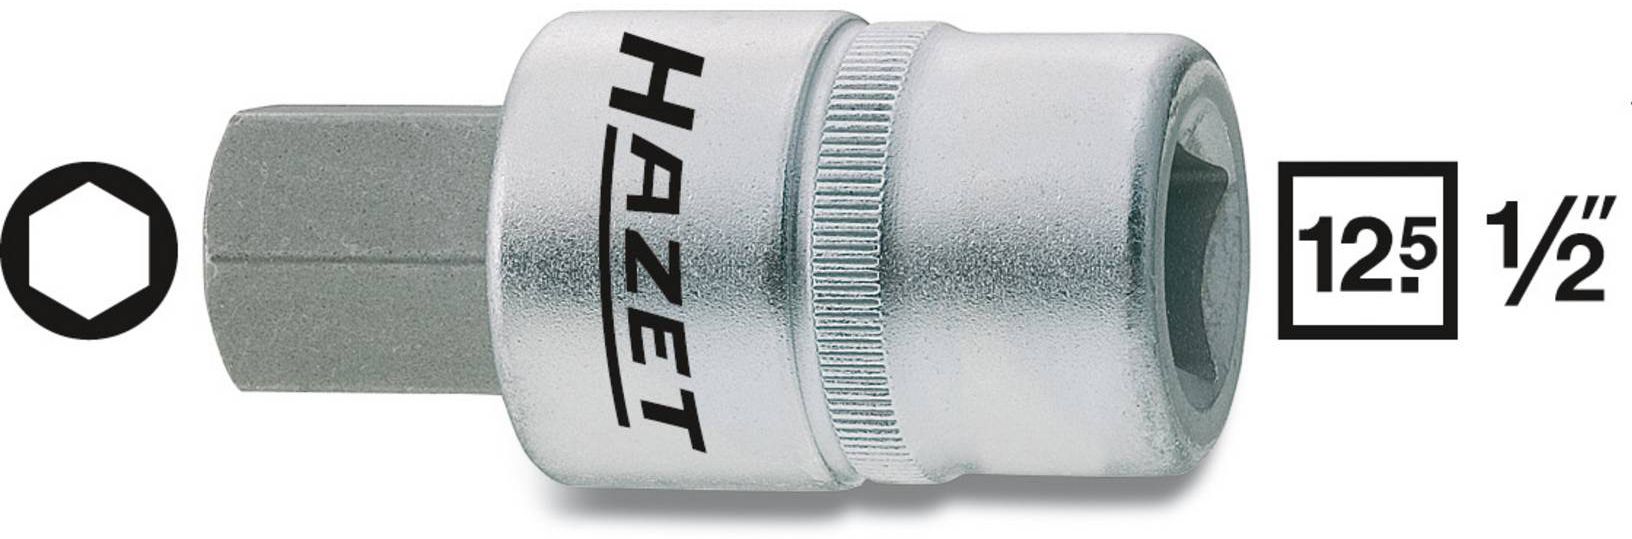 HAZET Schraubendreher-Einsatz, Inbus 986-8mm, 1/2", L: 60mm, D: 23mm - Steck- und Drehmomentschlüssel